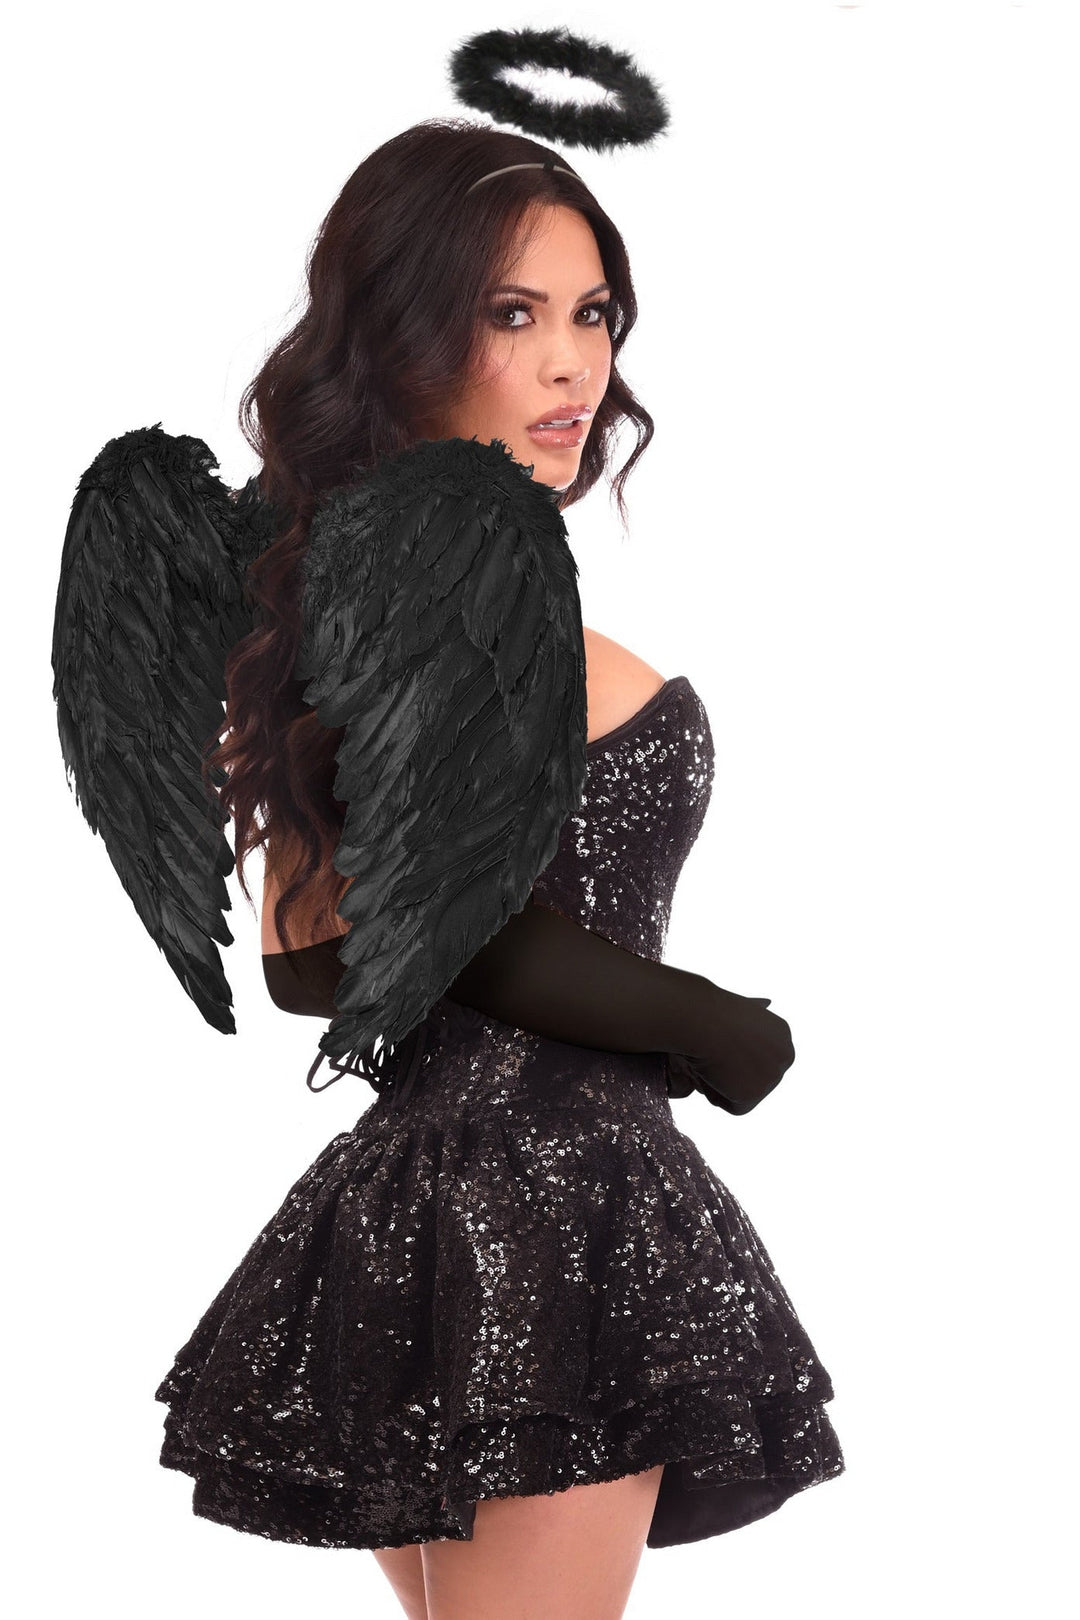 Top Drawer 4 PC Sequin Dark Angel Corset Dress Costume